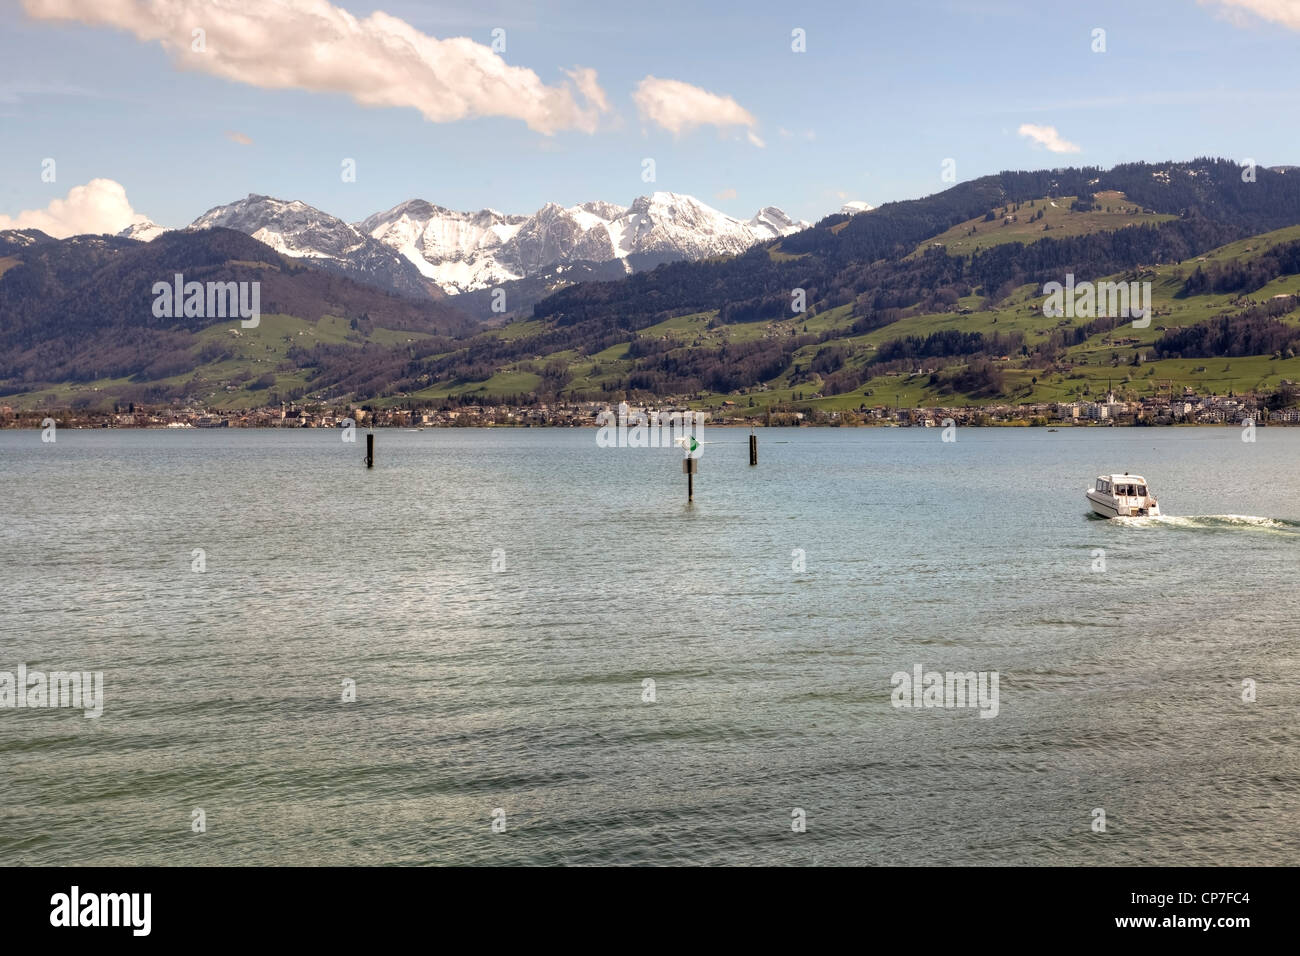 Le lac Supérieur, le lac de Zurich, Rapperswil, Saint-Gall, Suisse Banque D'Images